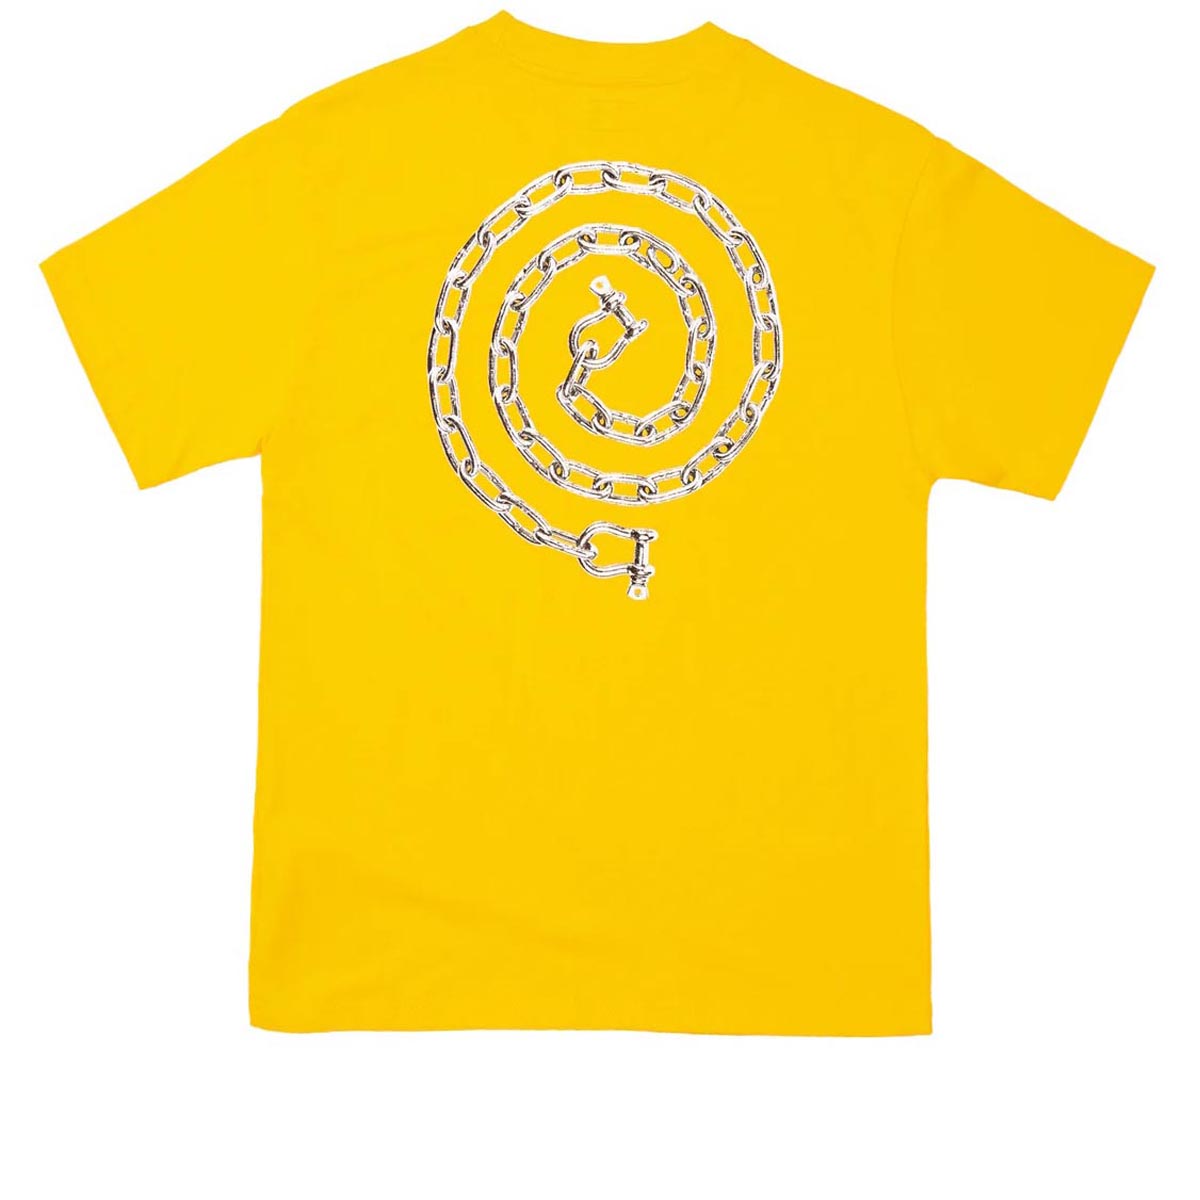 Hoddle Lock T-Shirt - Yellow image 2